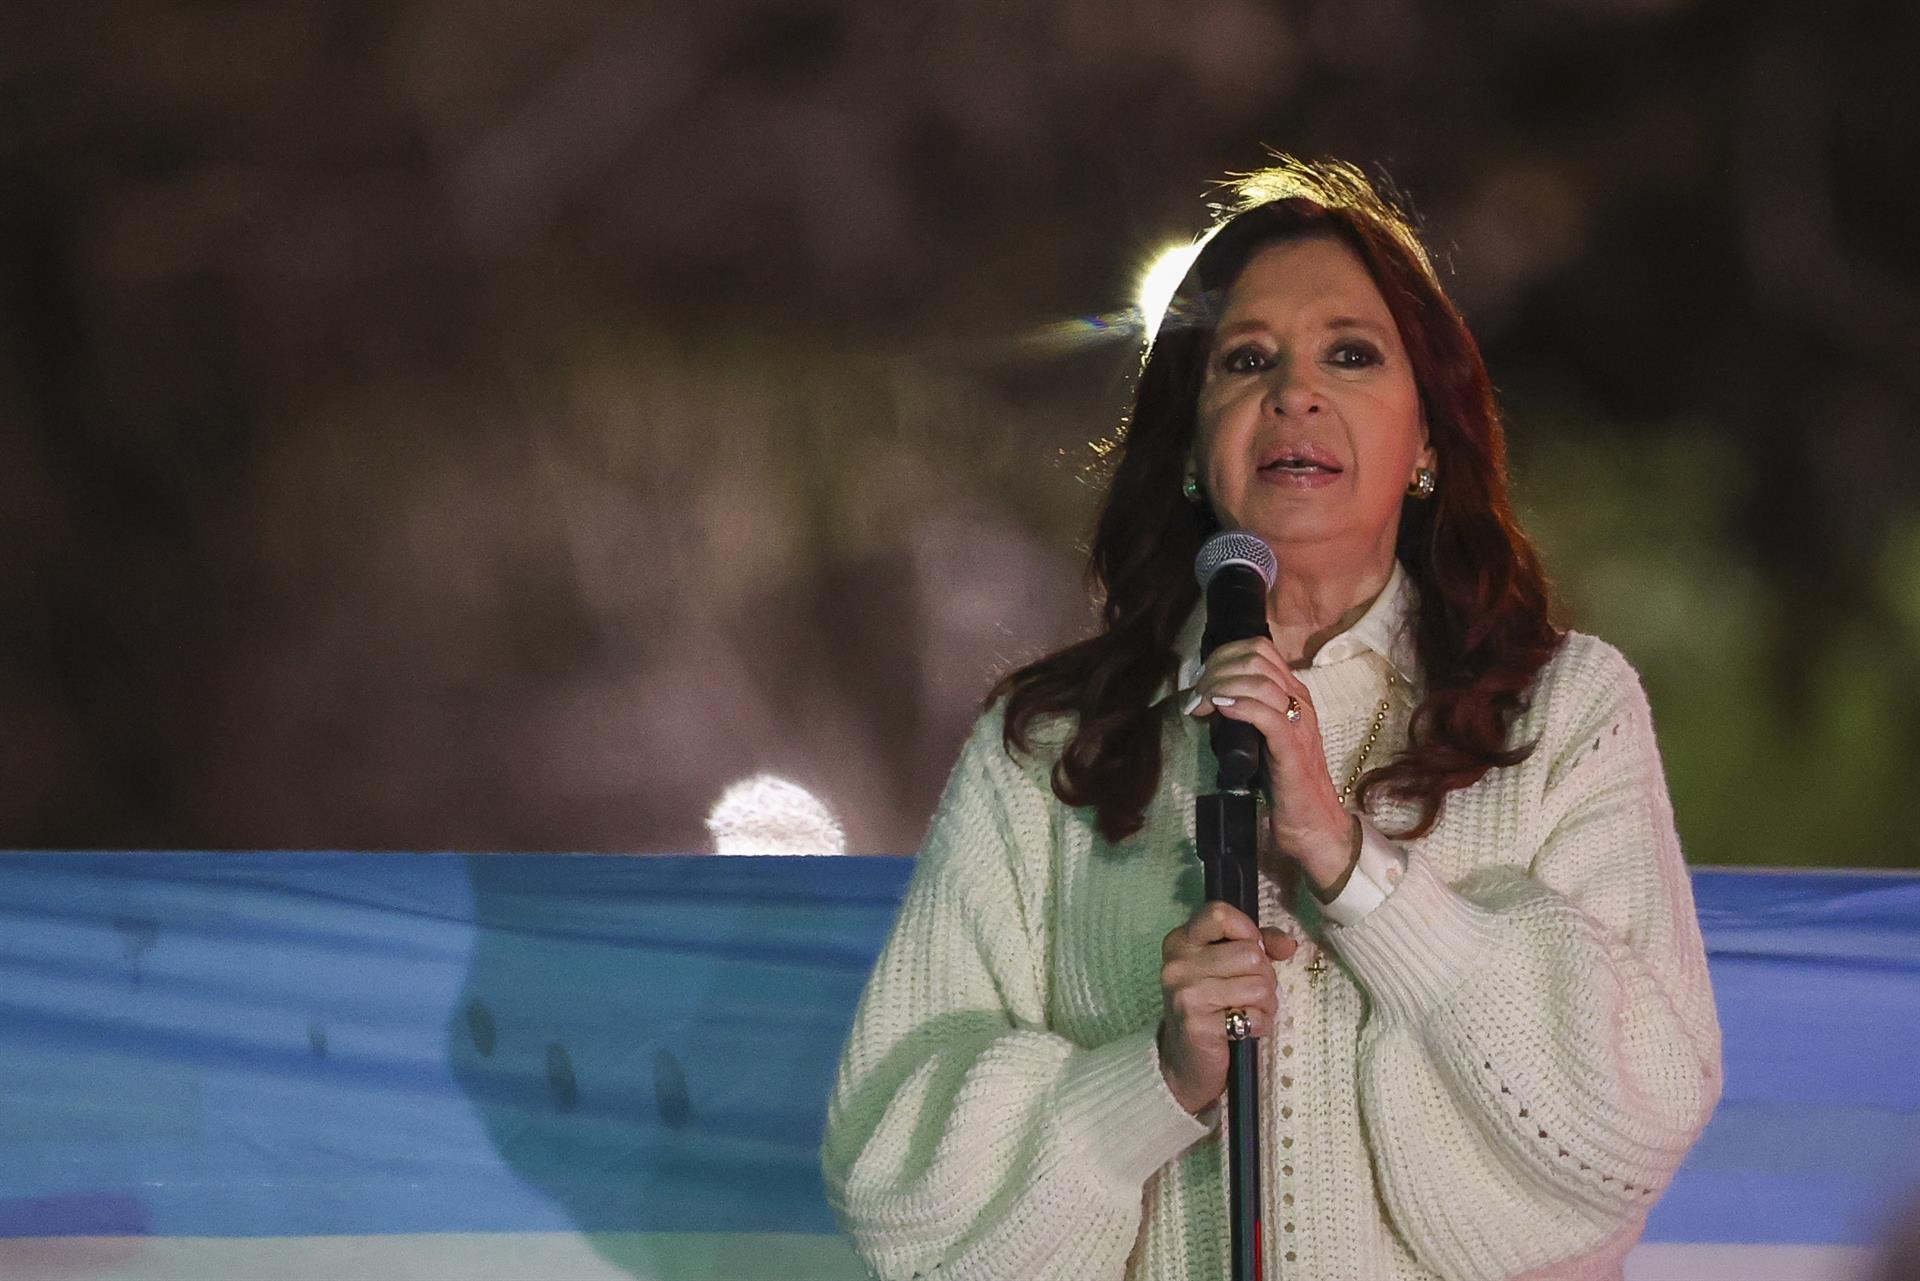 Otro golpe para Cristina Kirchner: irá a juicio oral por lavado de dinero con sus hoteles